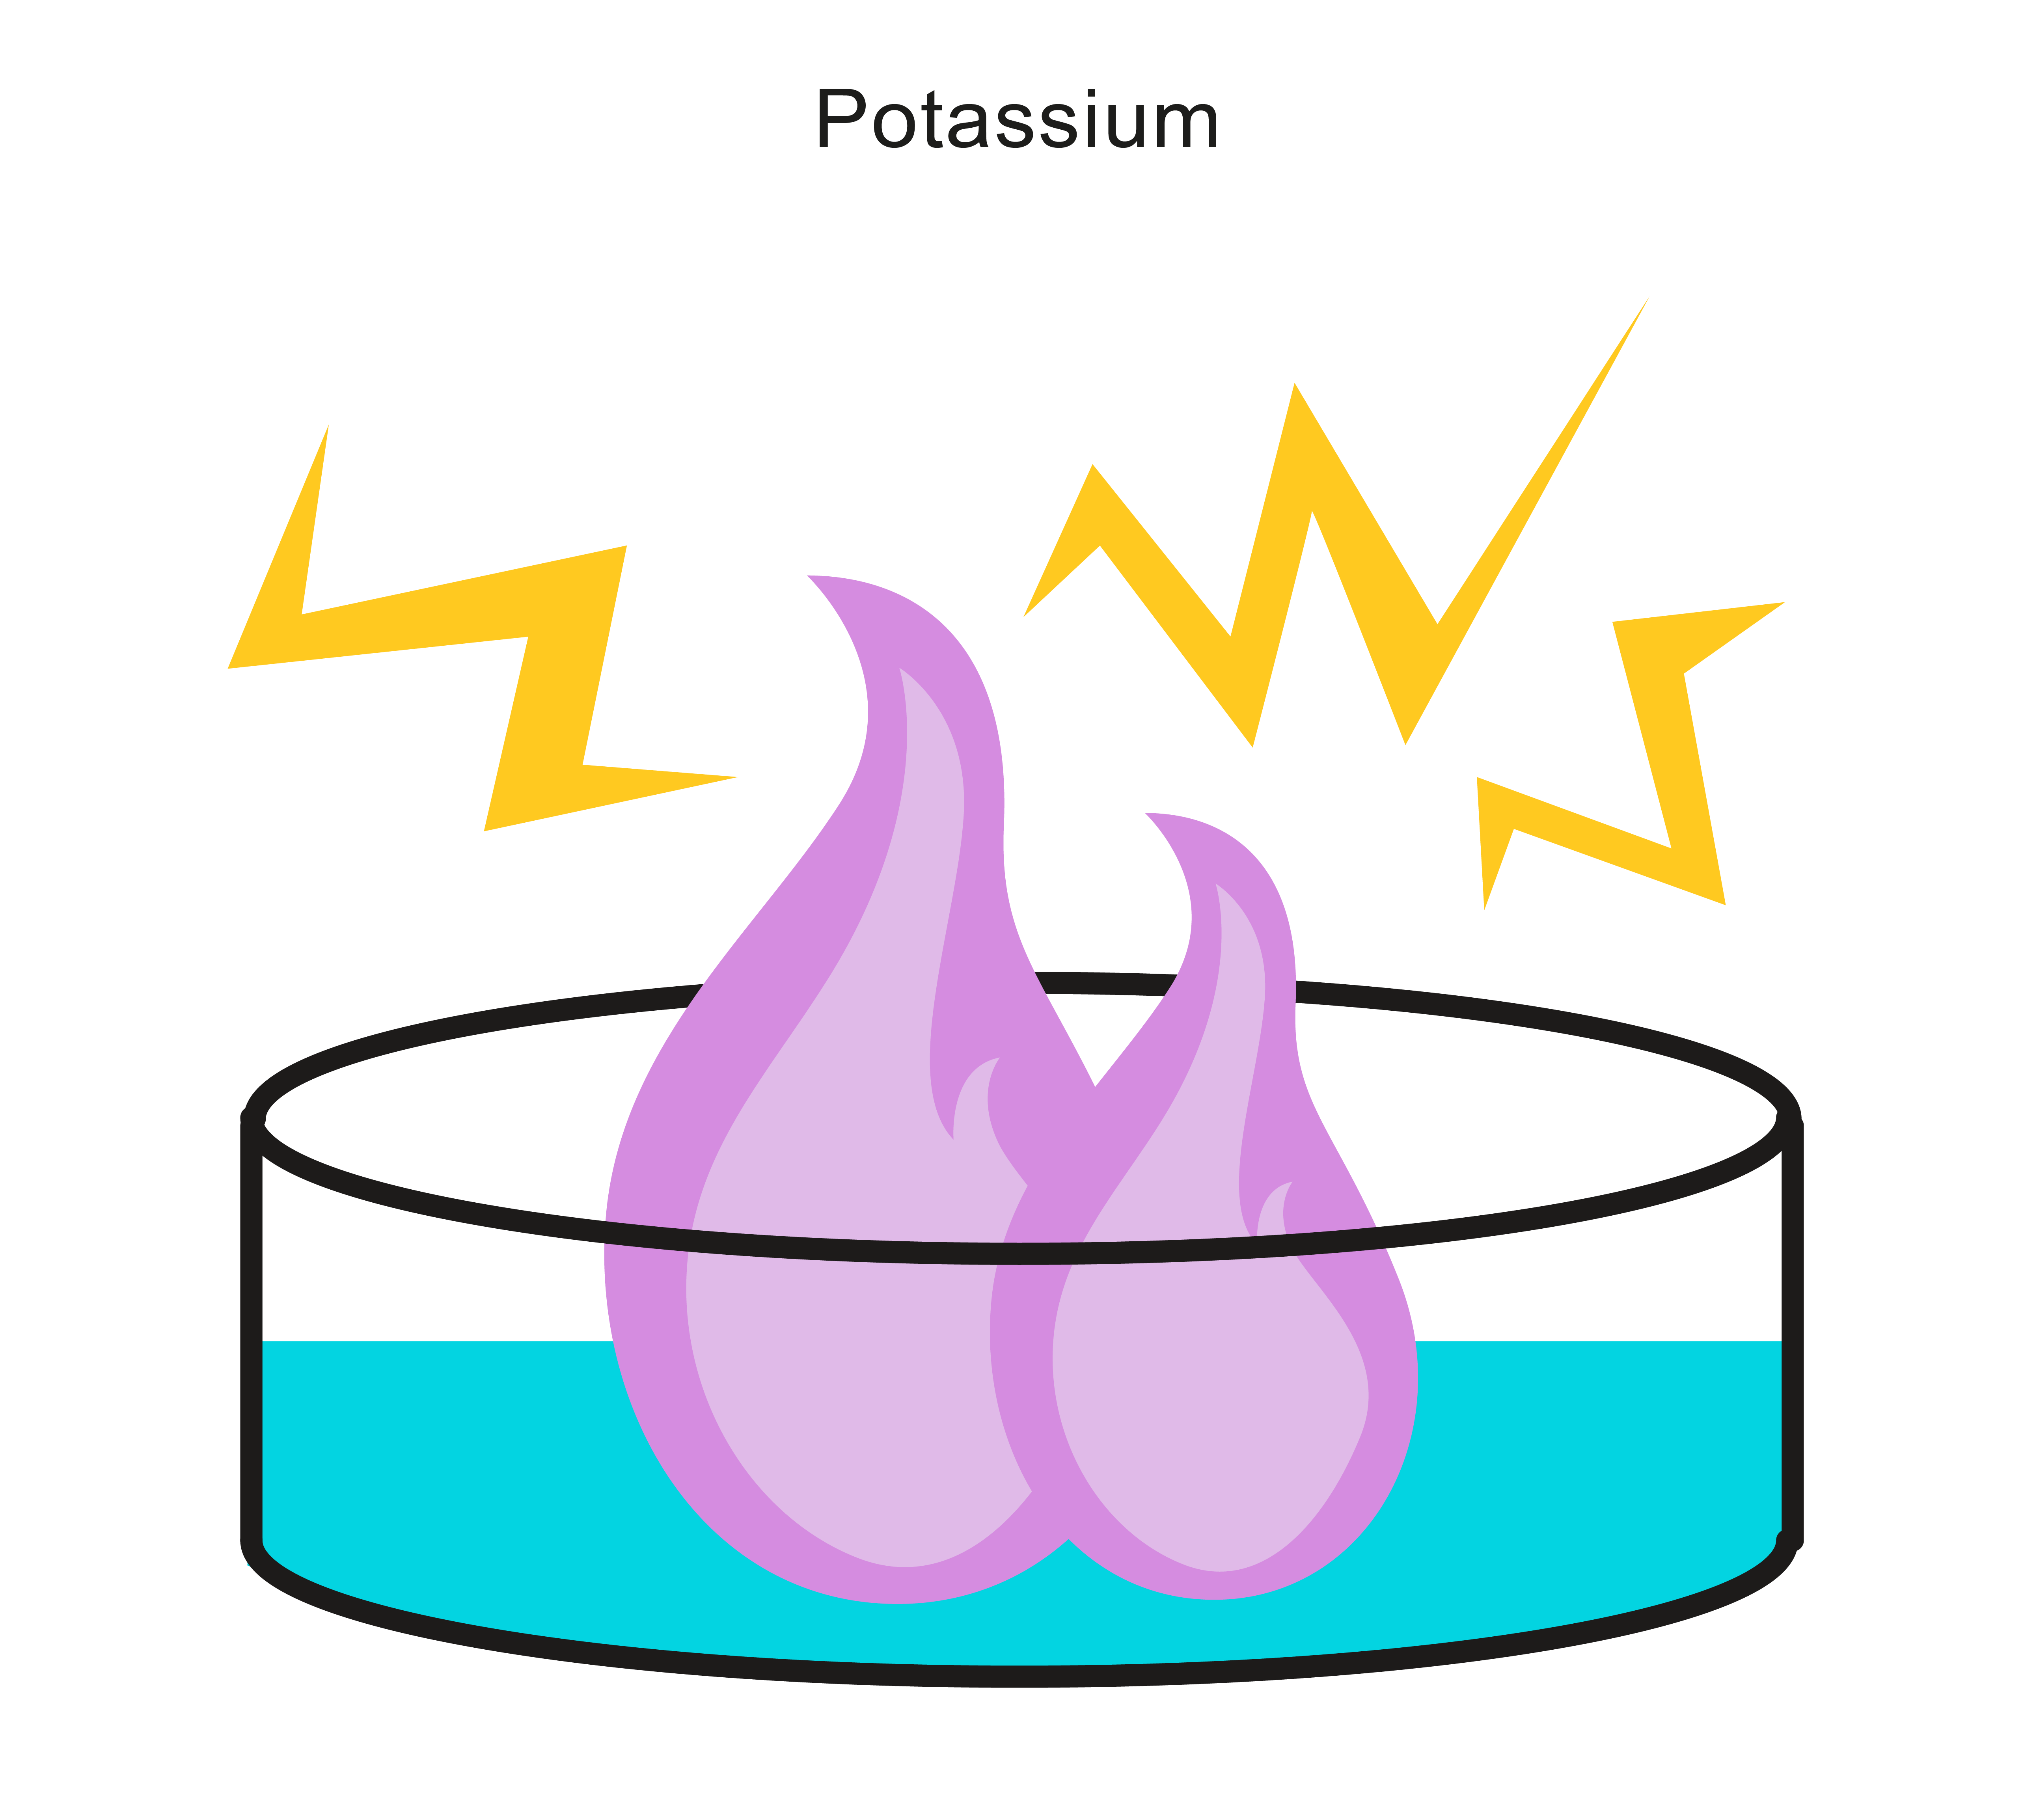 Potassium in water